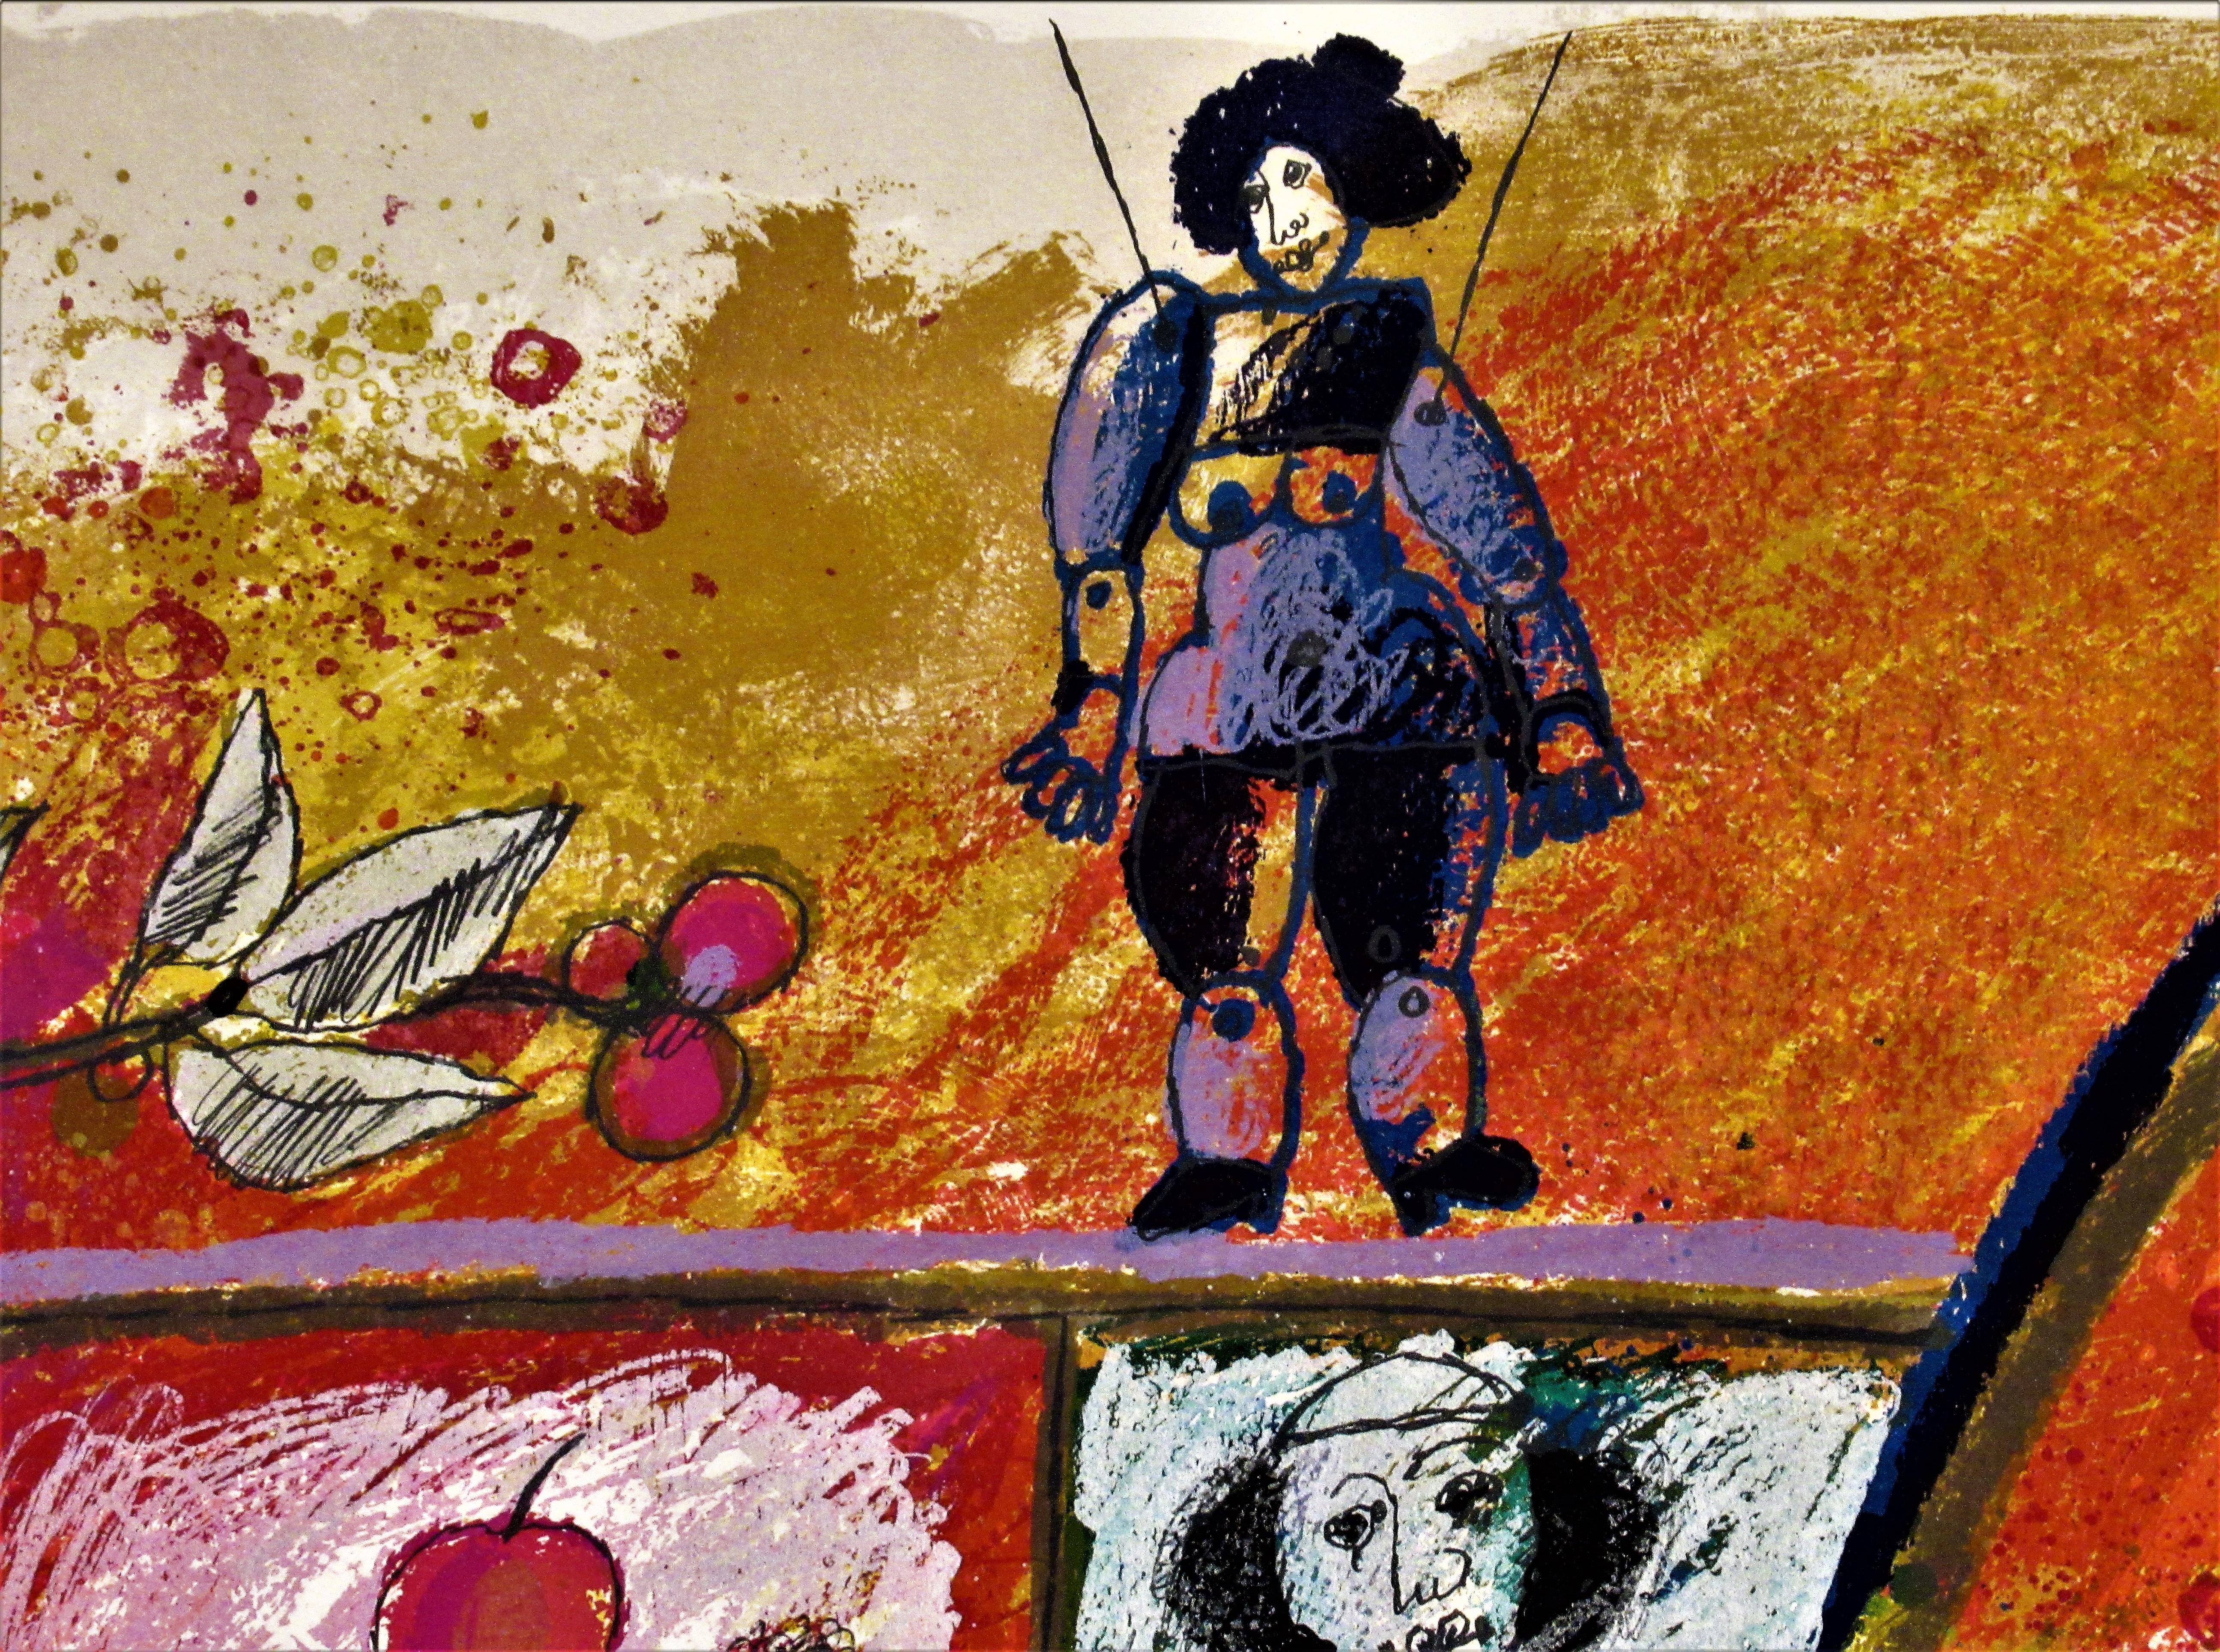 Künstler:   Theo Tobiasse (Französisch/Israelisch, 1927-2012)
Titel:   Bloße Biblizität
Jahr:   1984
Medium:	Farblithographie, mit Collage
Auflage:	Mit Bleistift nummeriert 172/175
Papier:	Gewölbe
Bildgröße:   27.5 x 40 Zoll
papierformat:    28.5 x